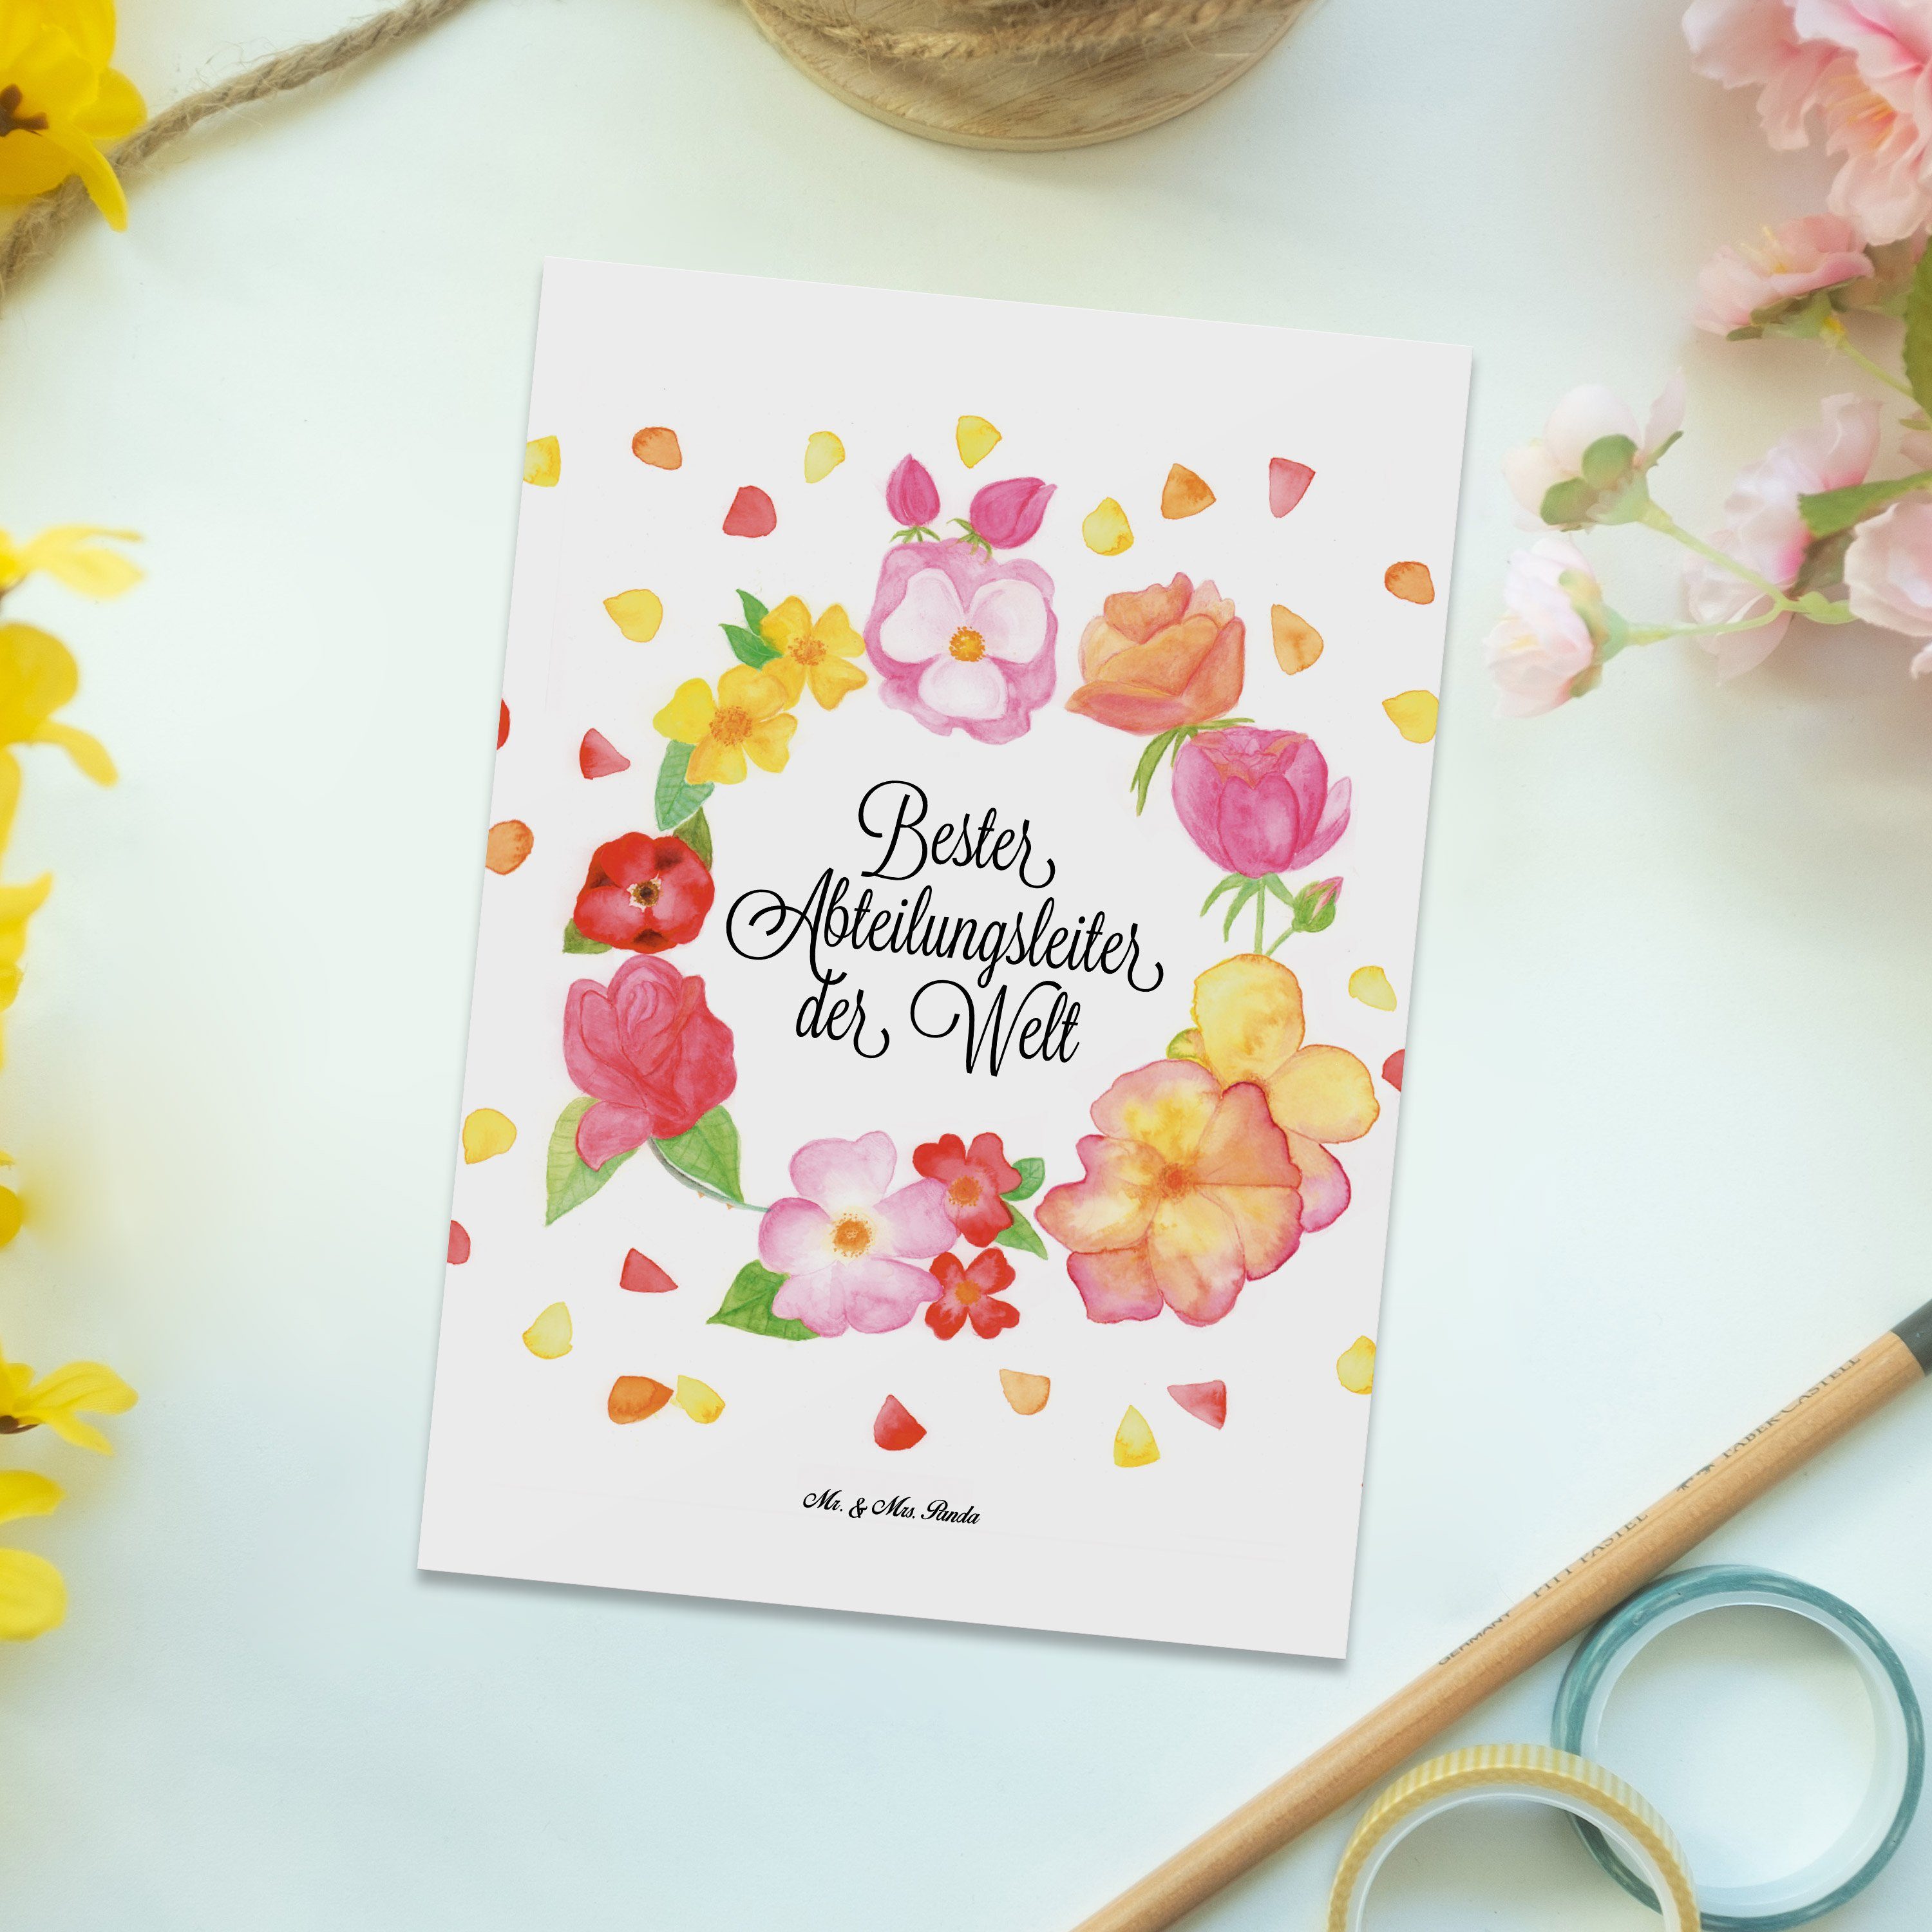 Mr. & Mrs. Panda Geburtstagskarte, Abteilungsleiter Geschenk, Weiß - Postkarte - Blumen Arbeit